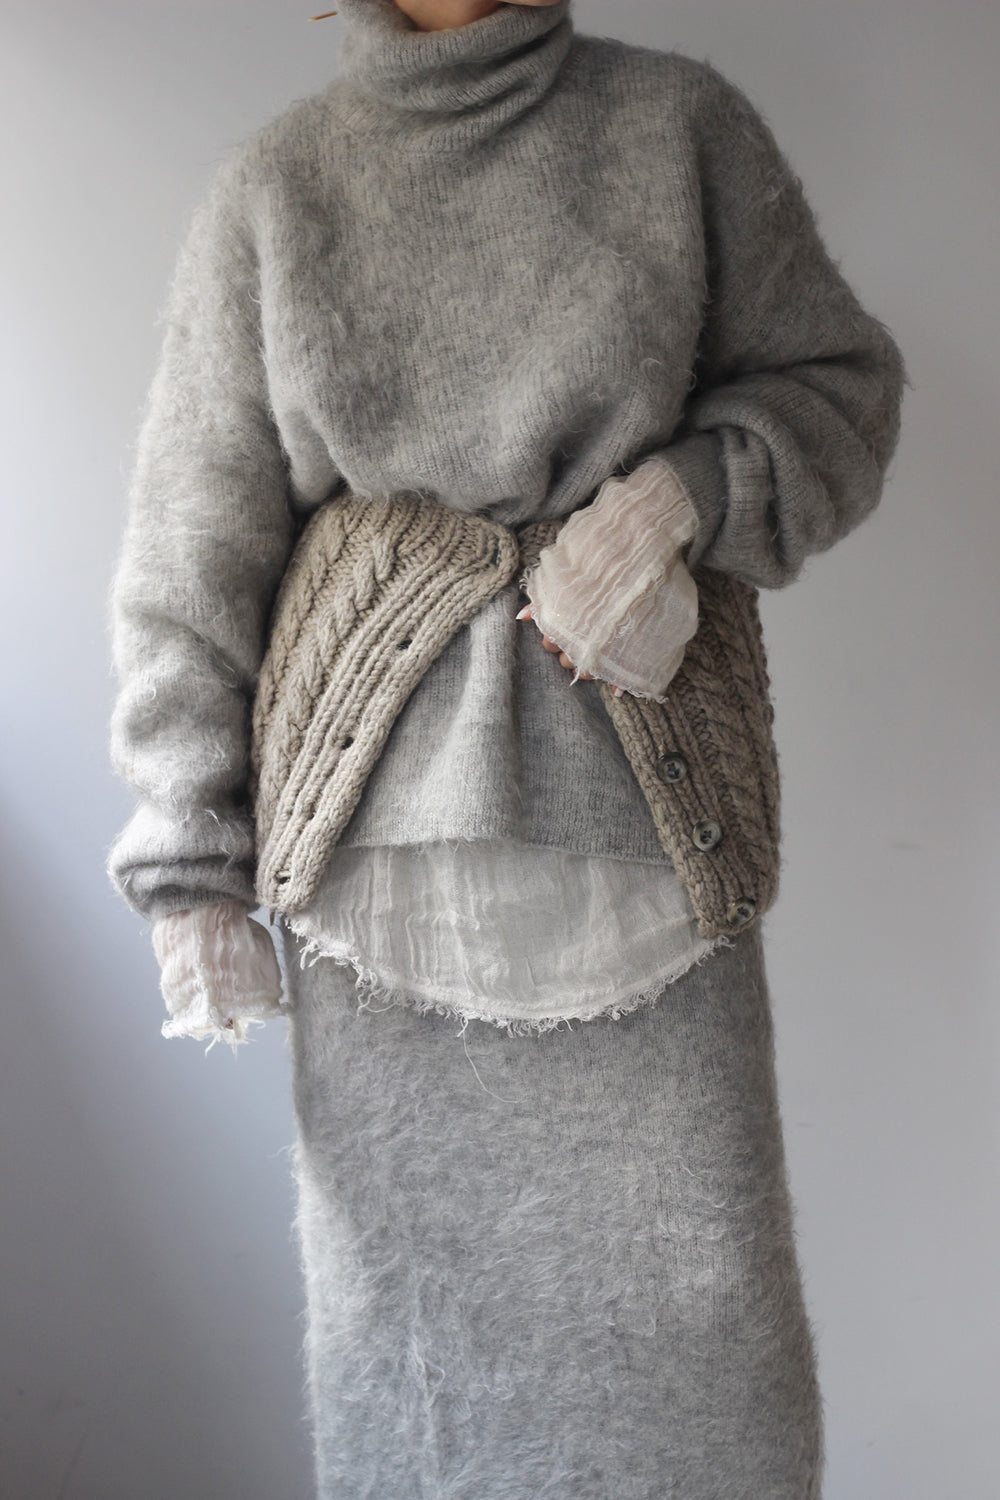 ERIKO KATORI "kid mohair turtle neck knit" (gray)